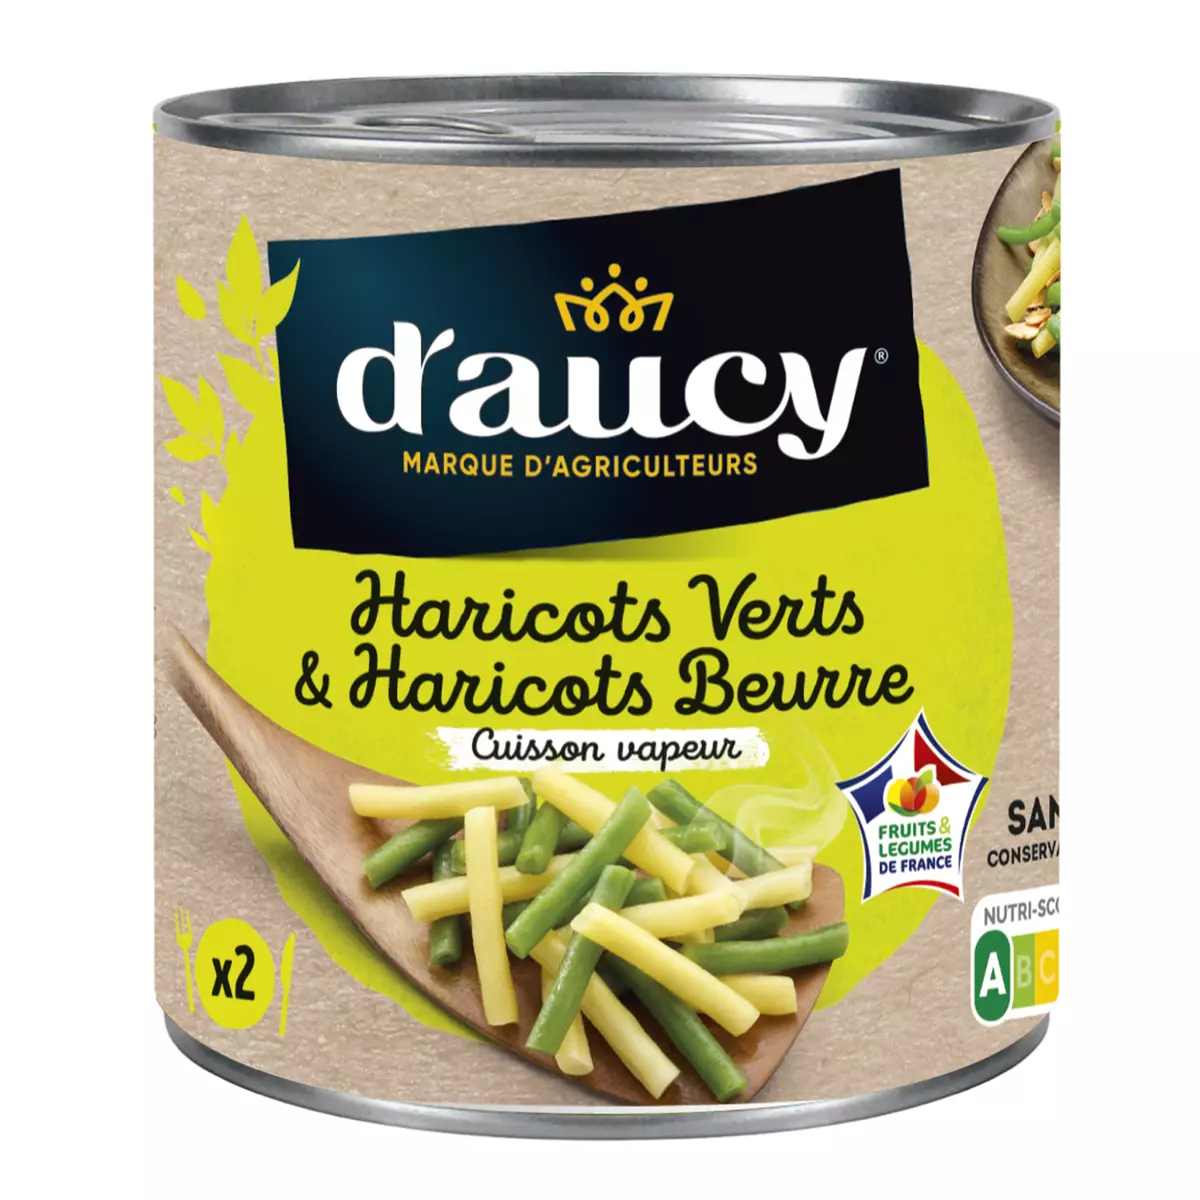 D'AUCY Duo haricots verts haricots beurre sous vide 225g